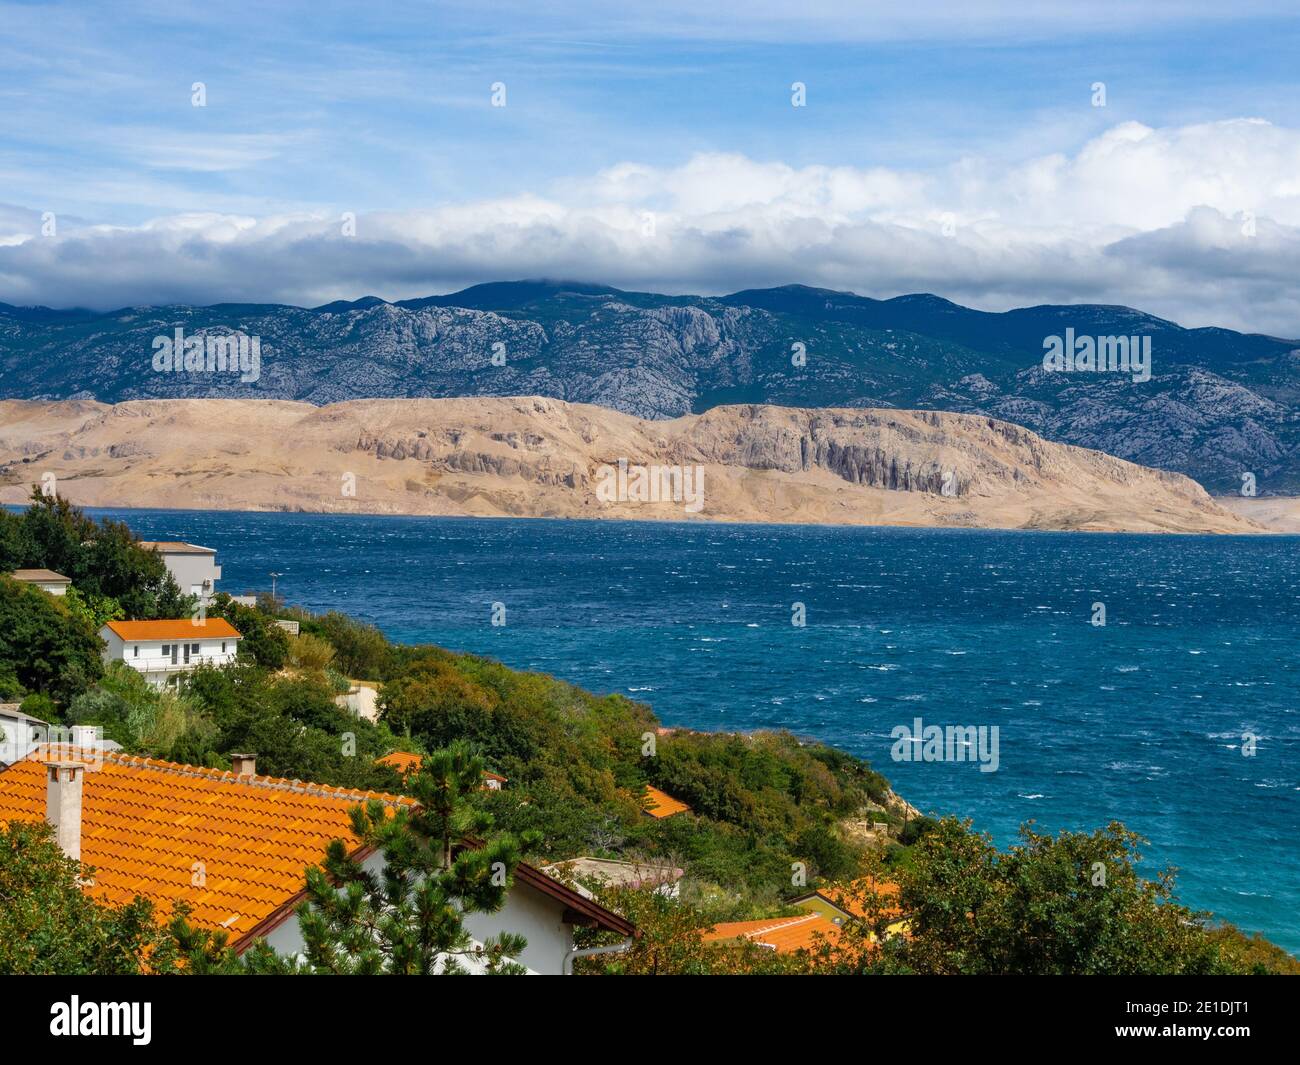 Eine Siedlung am Meer. Es blickt auf eine Siedlung an der Adria auf der Insel Pag in Kroatien. Stockfoto